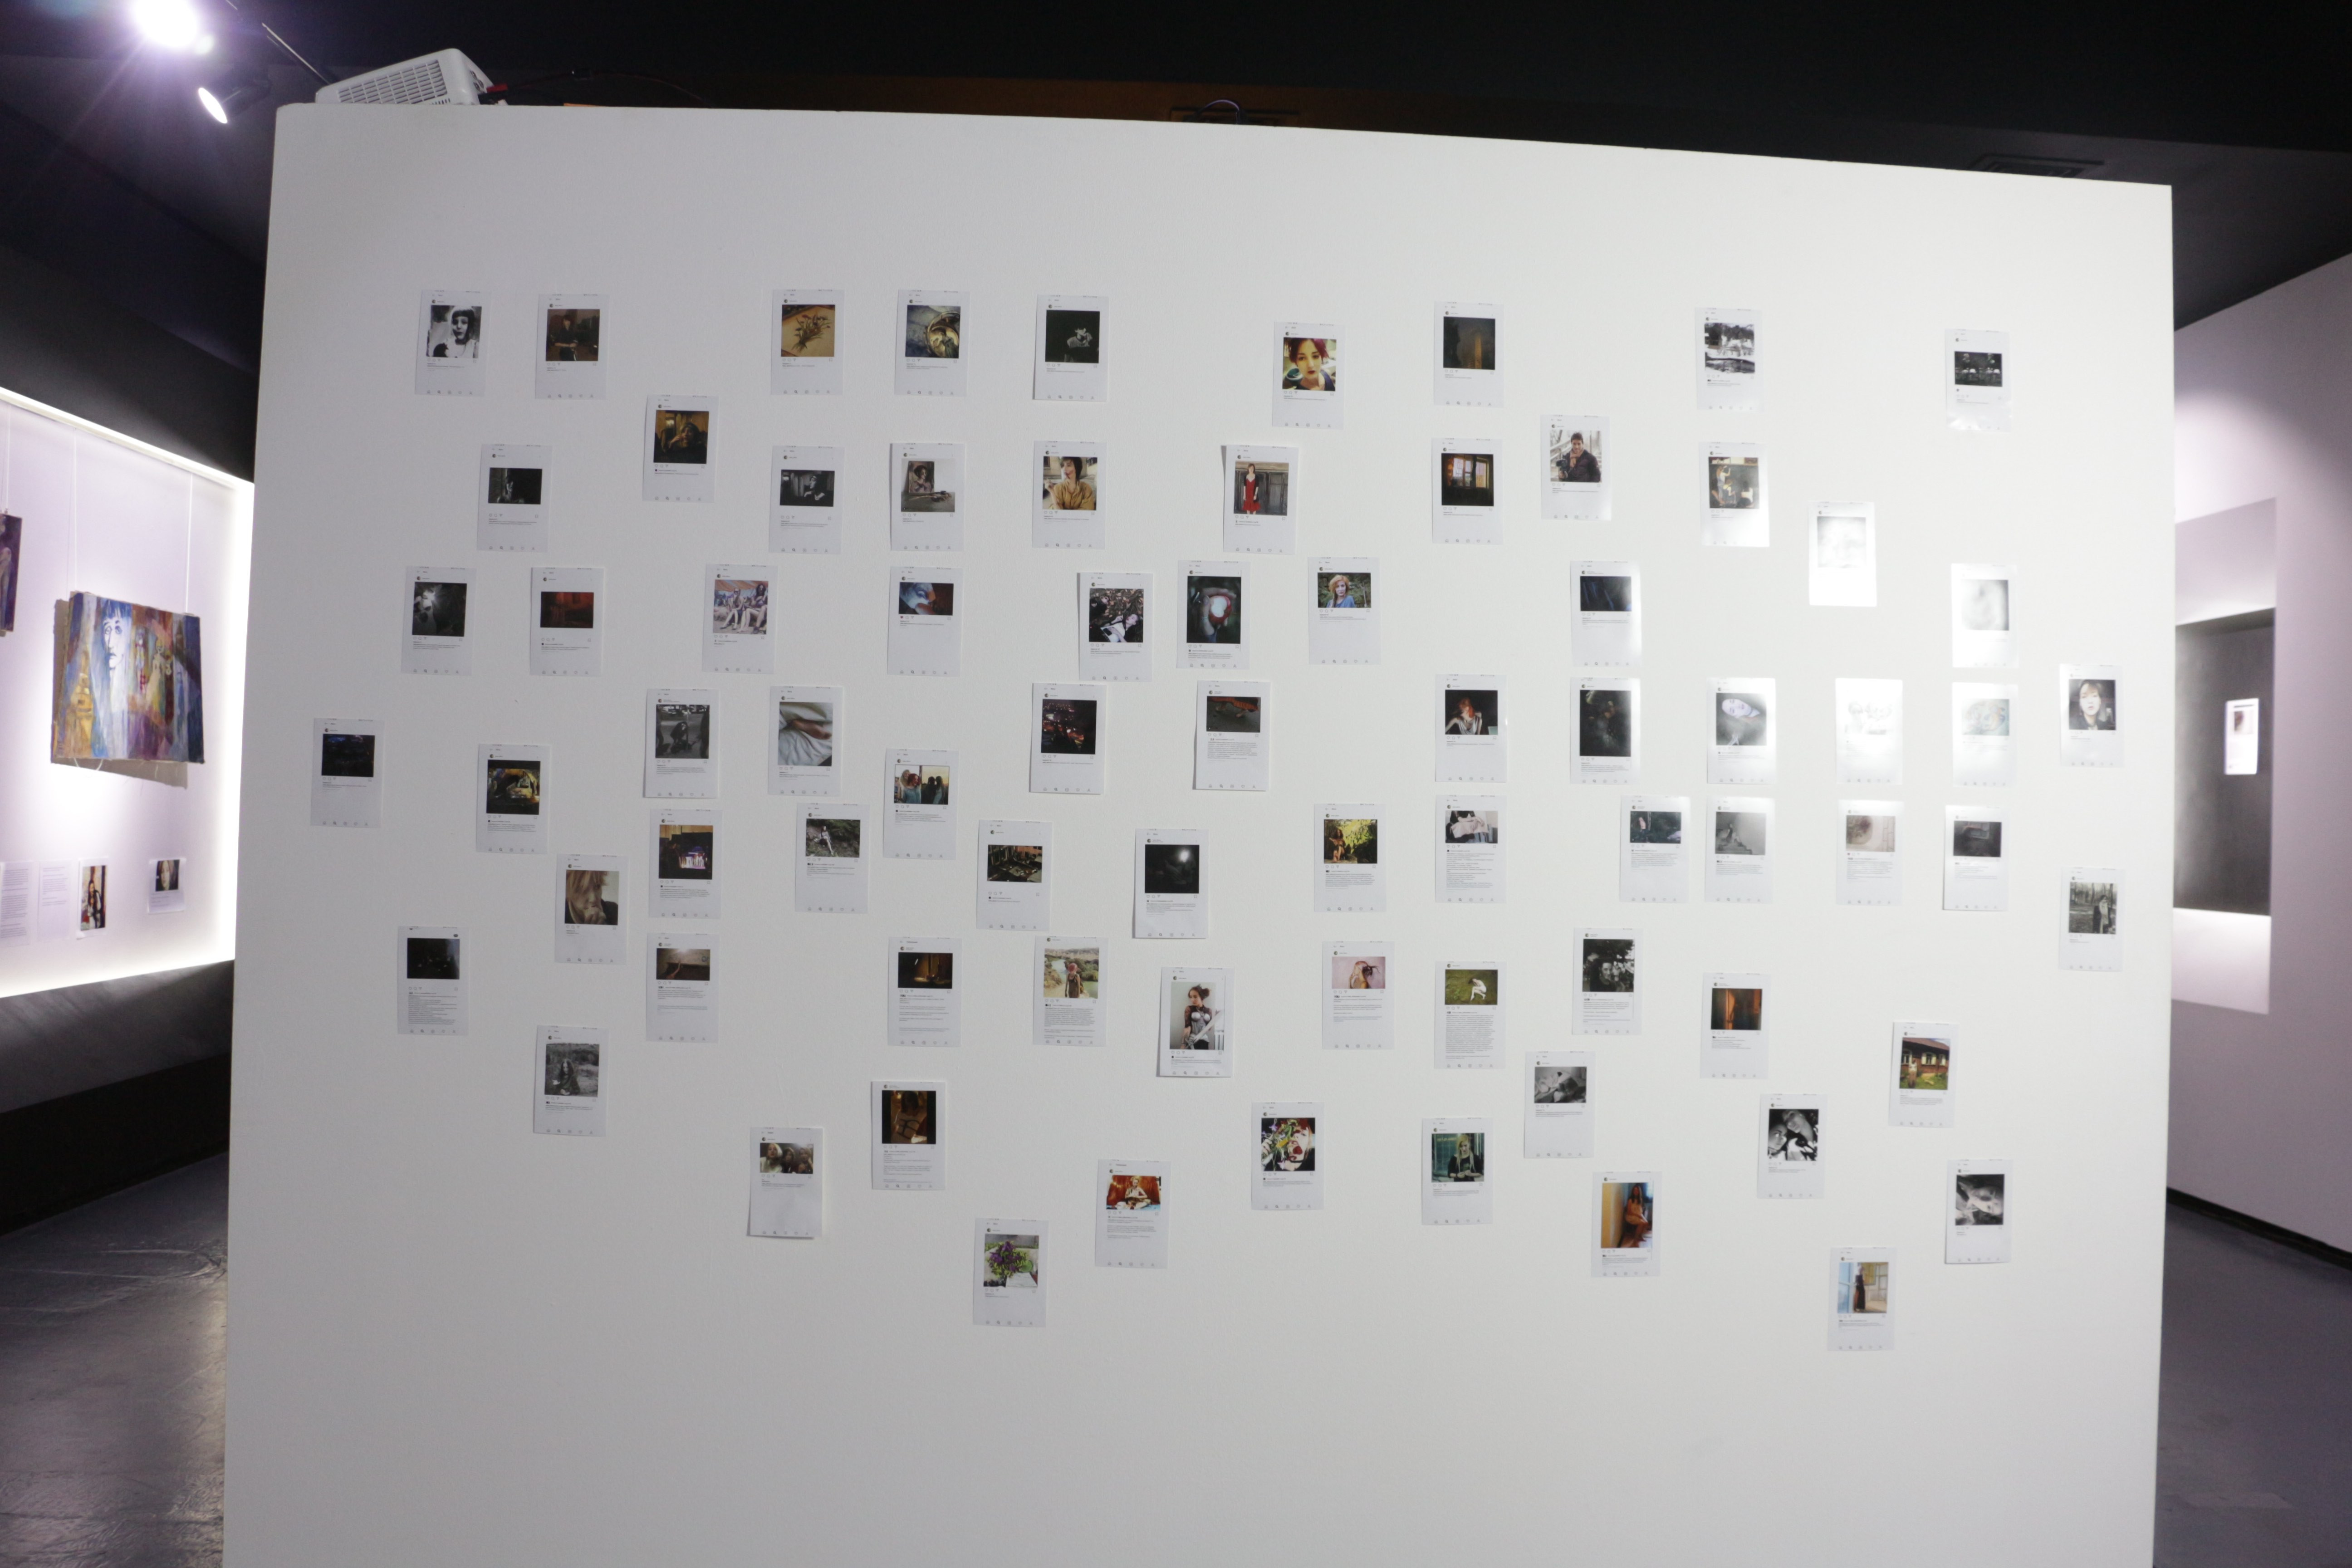 Обратная сторона стены с&nbsp;инсталляцией&nbsp;— распечатанные 10×15 скриншоты инстаграмма Насти. @vesta_edova.